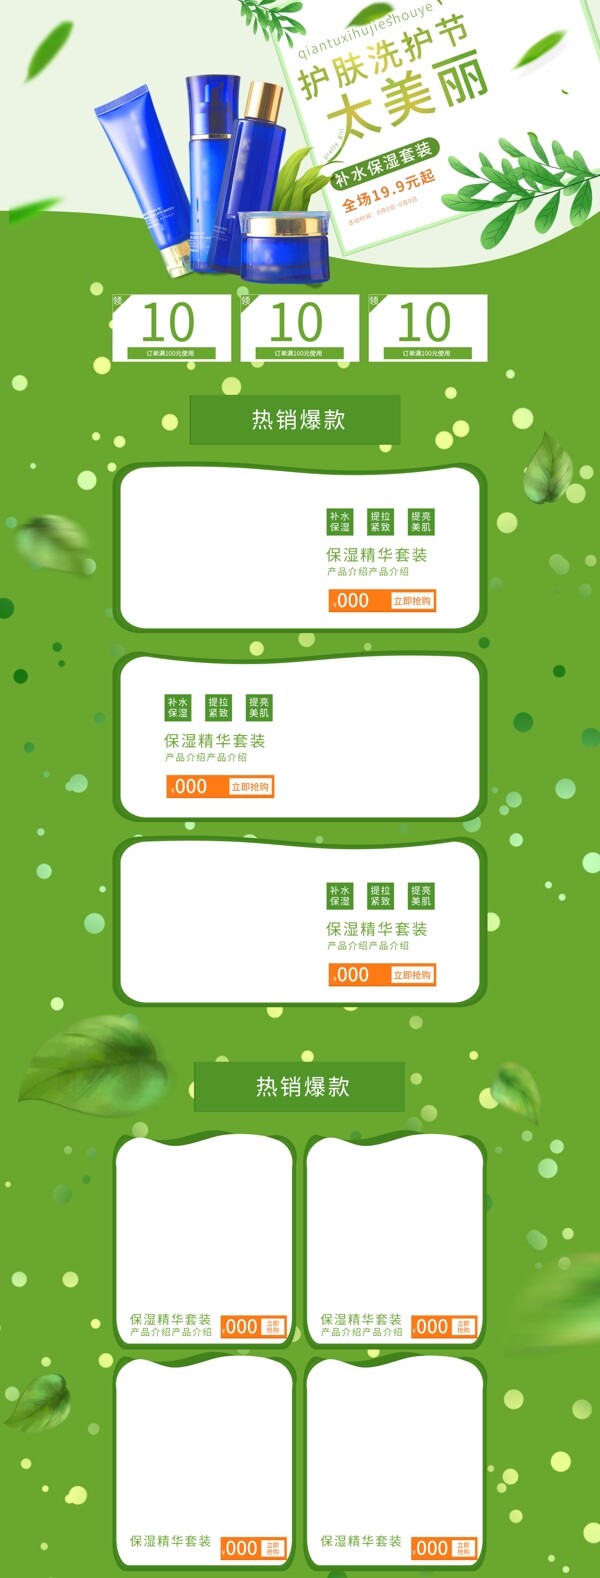 绿色植物大自然京东洗护节首页模板